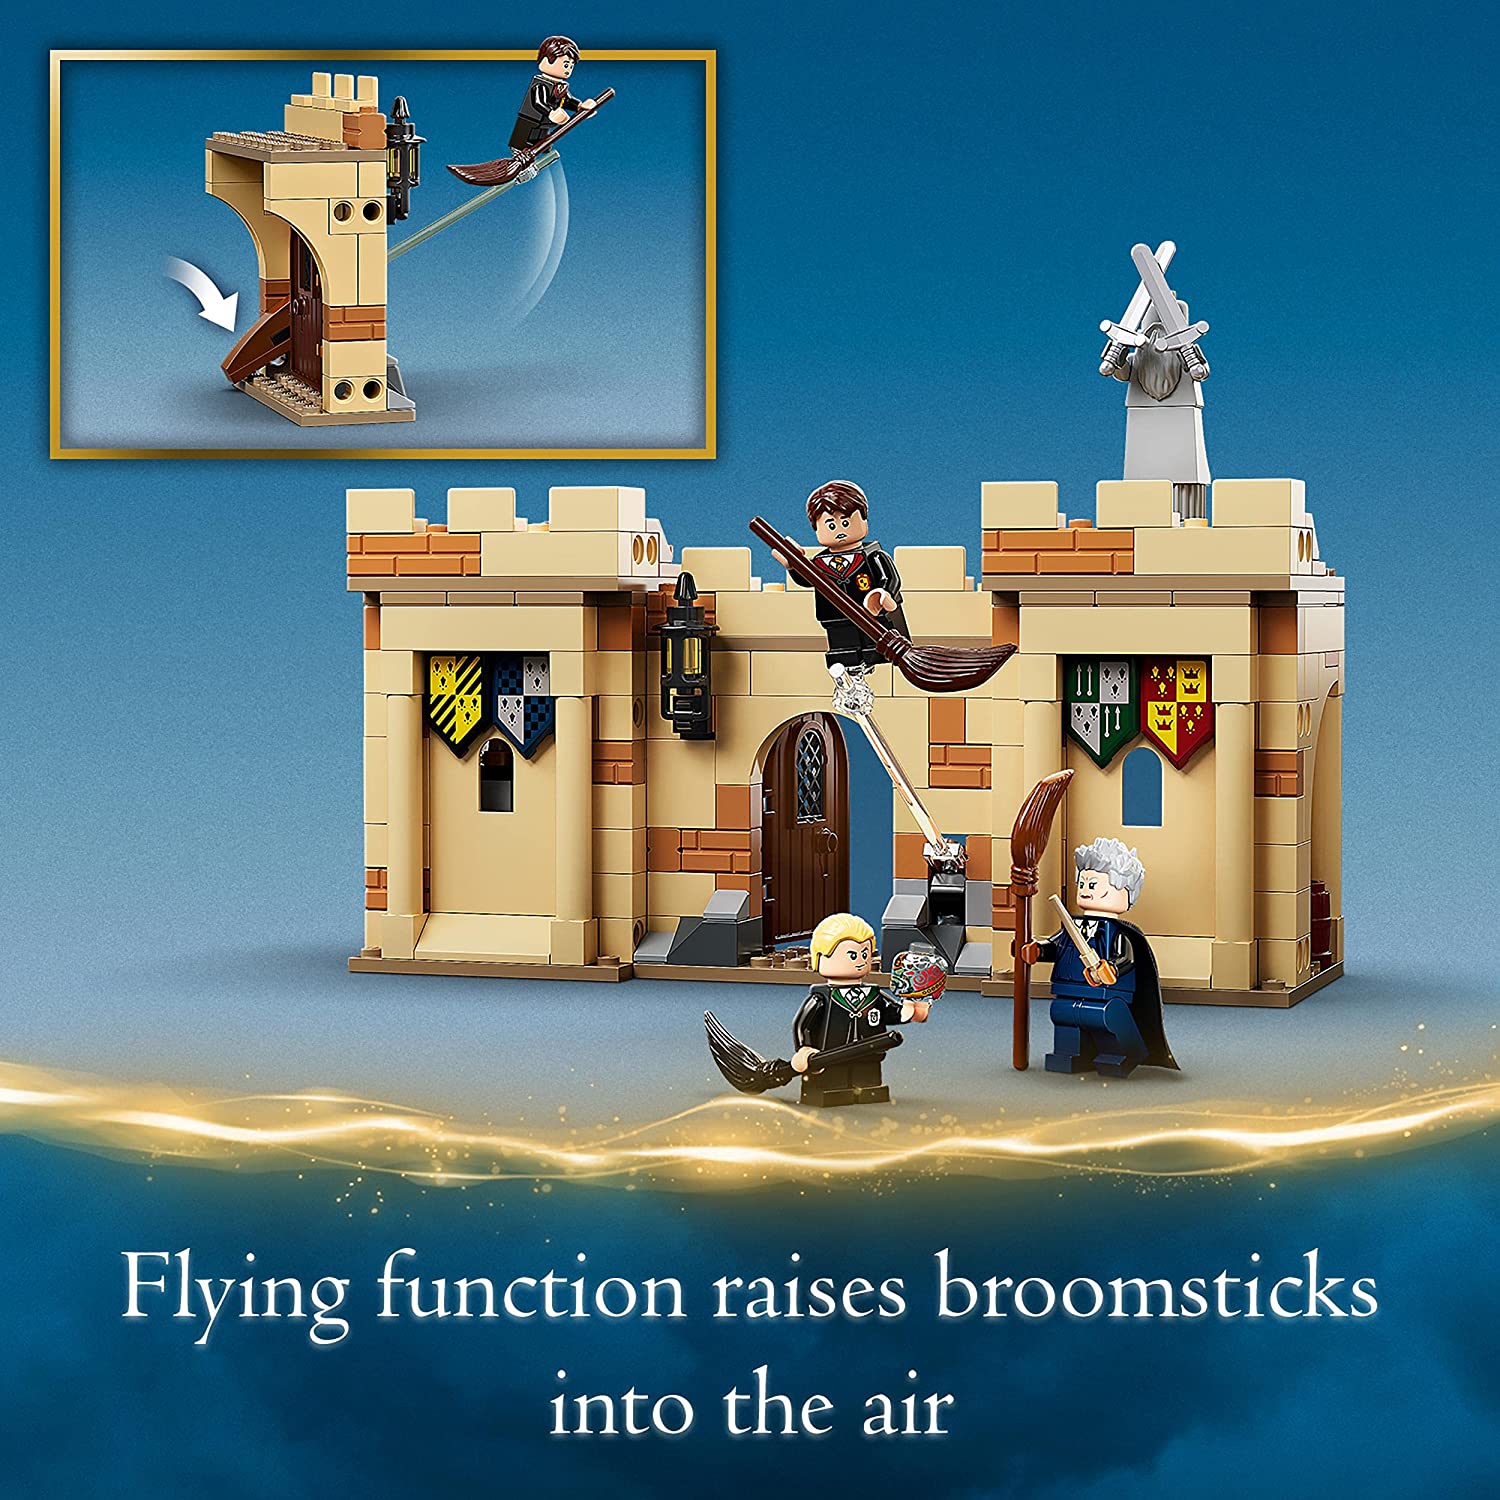 Lego Harry Potter - Hogwarts: Primeira Lição De Voo - 76395